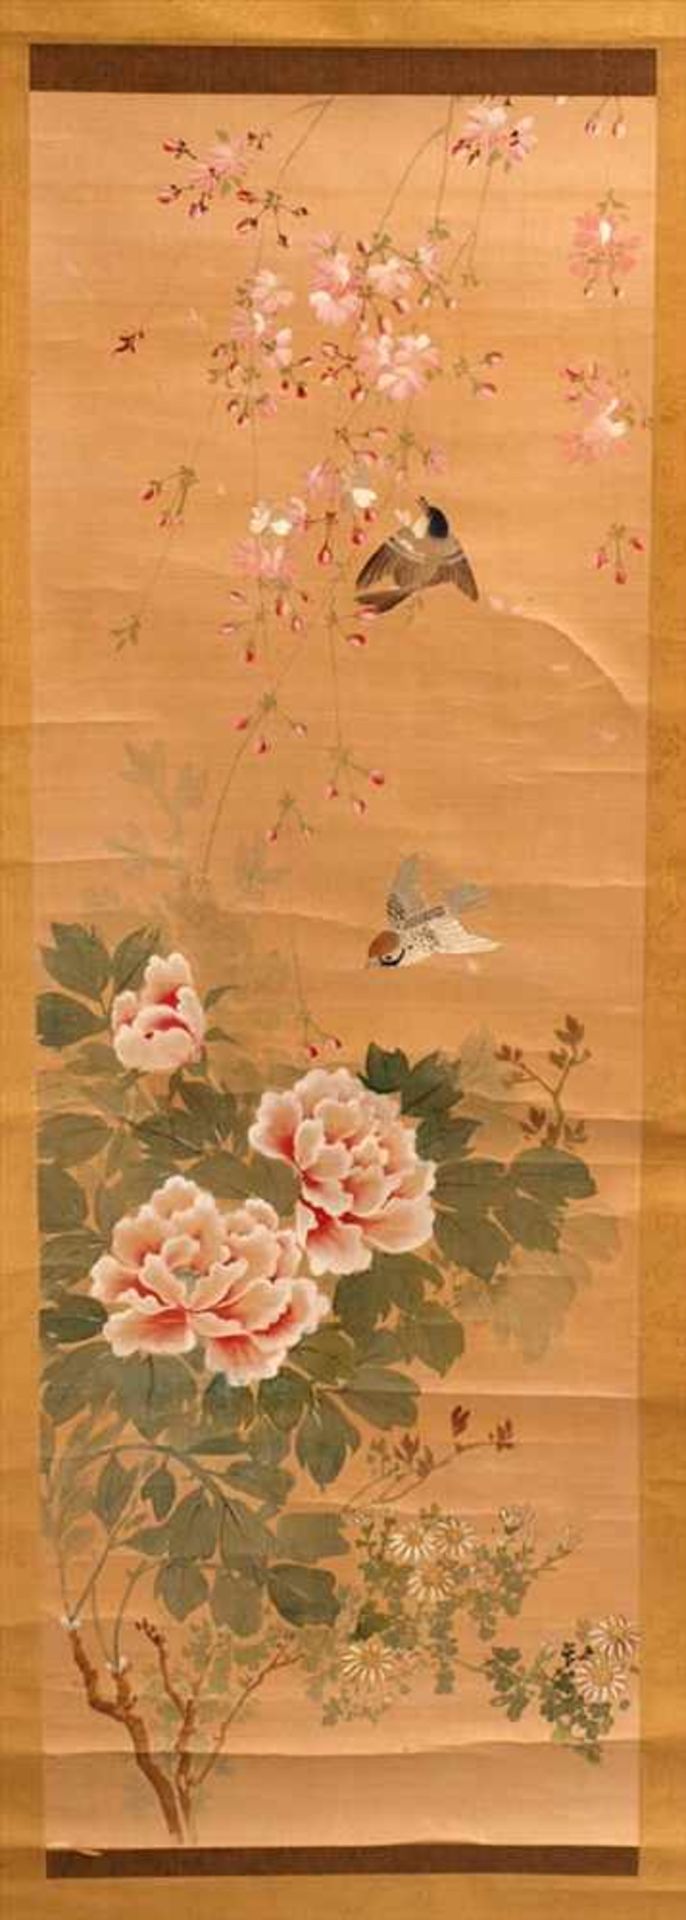 Farbholzschnitt, Japan, wohl 19.Jhdt.Blütenzweige mit teilweise überstickten Vögeln und Blüten. - Bild 2 aus 3